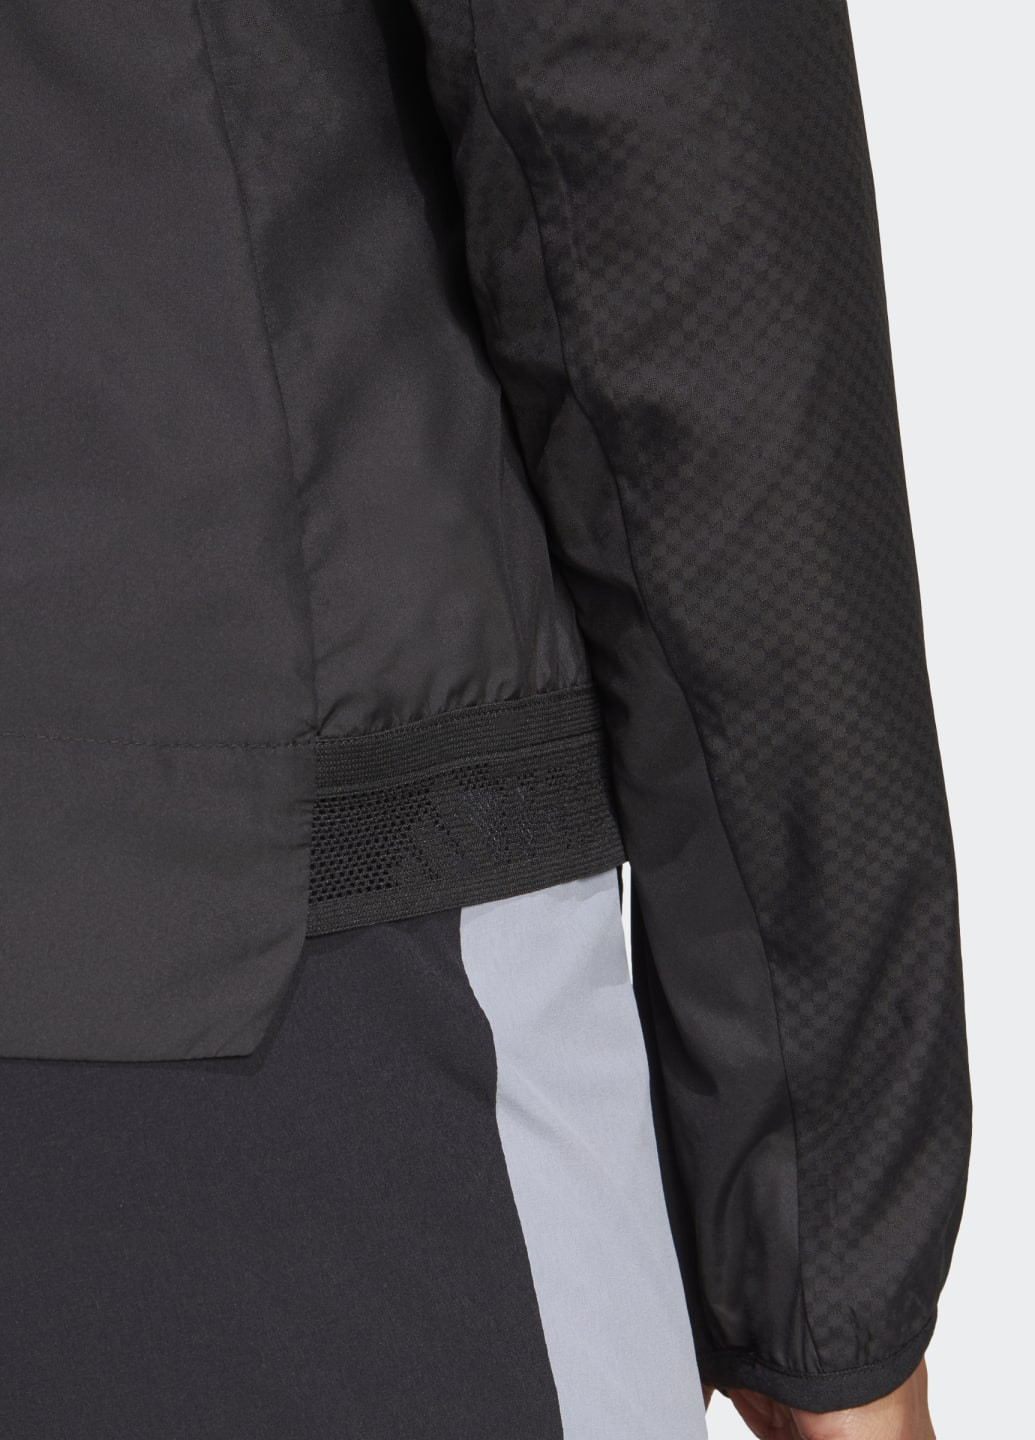 Черная демисезонная куртка terrex xperior windweav adidas